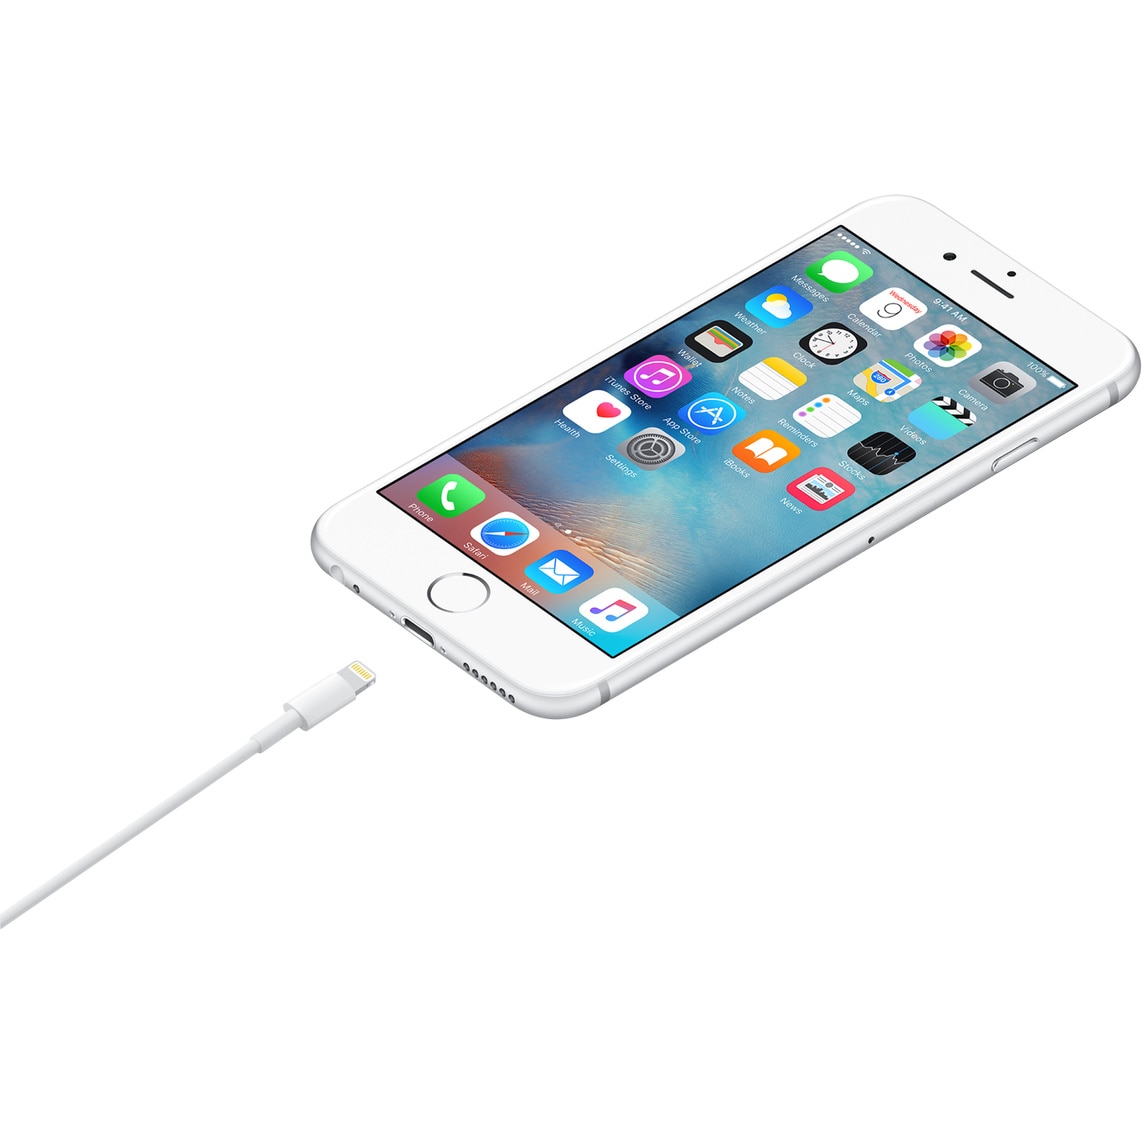 Câbles USB Apple iPhone 15 - Livraison 24/48h